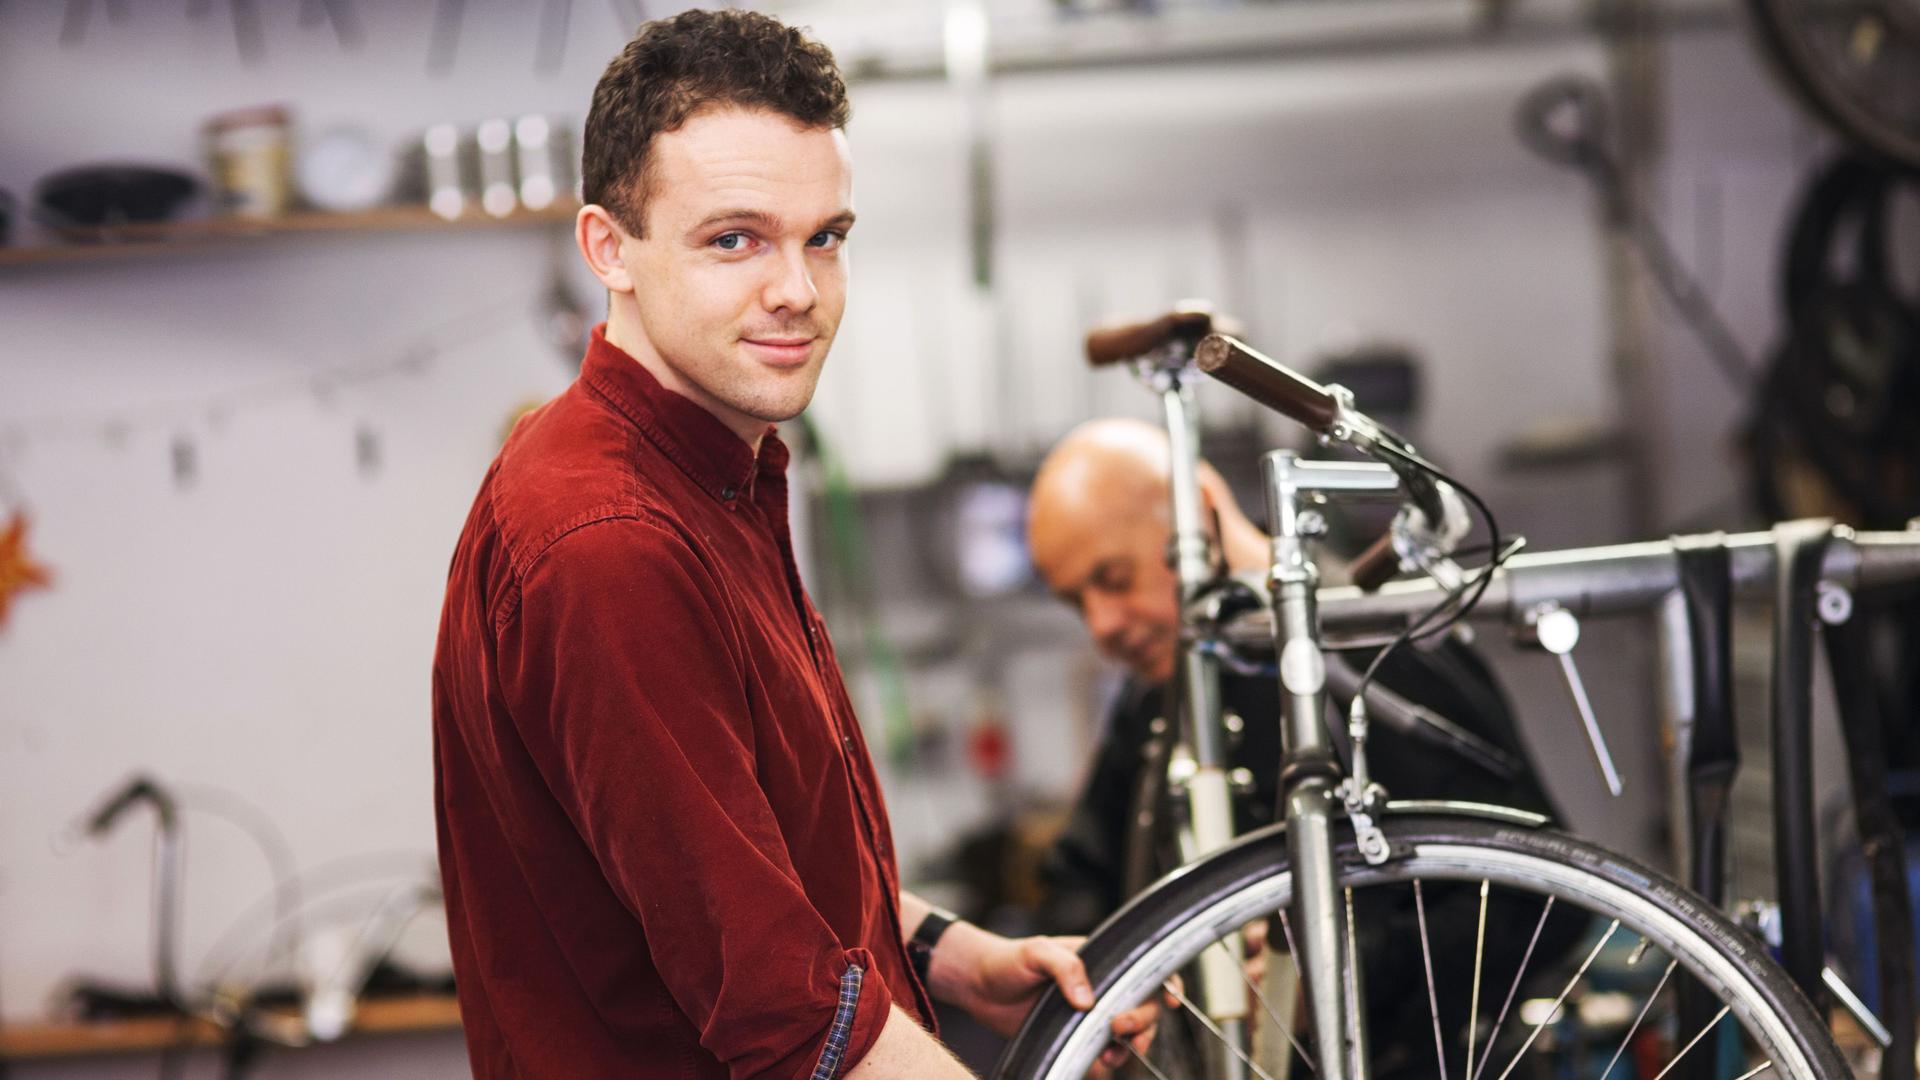 Ein junger Fahrradtechniker, der in einer Werkstatt an dem Vorderrad eines Fahrrads arbeitet und in die Kamera lächelt.